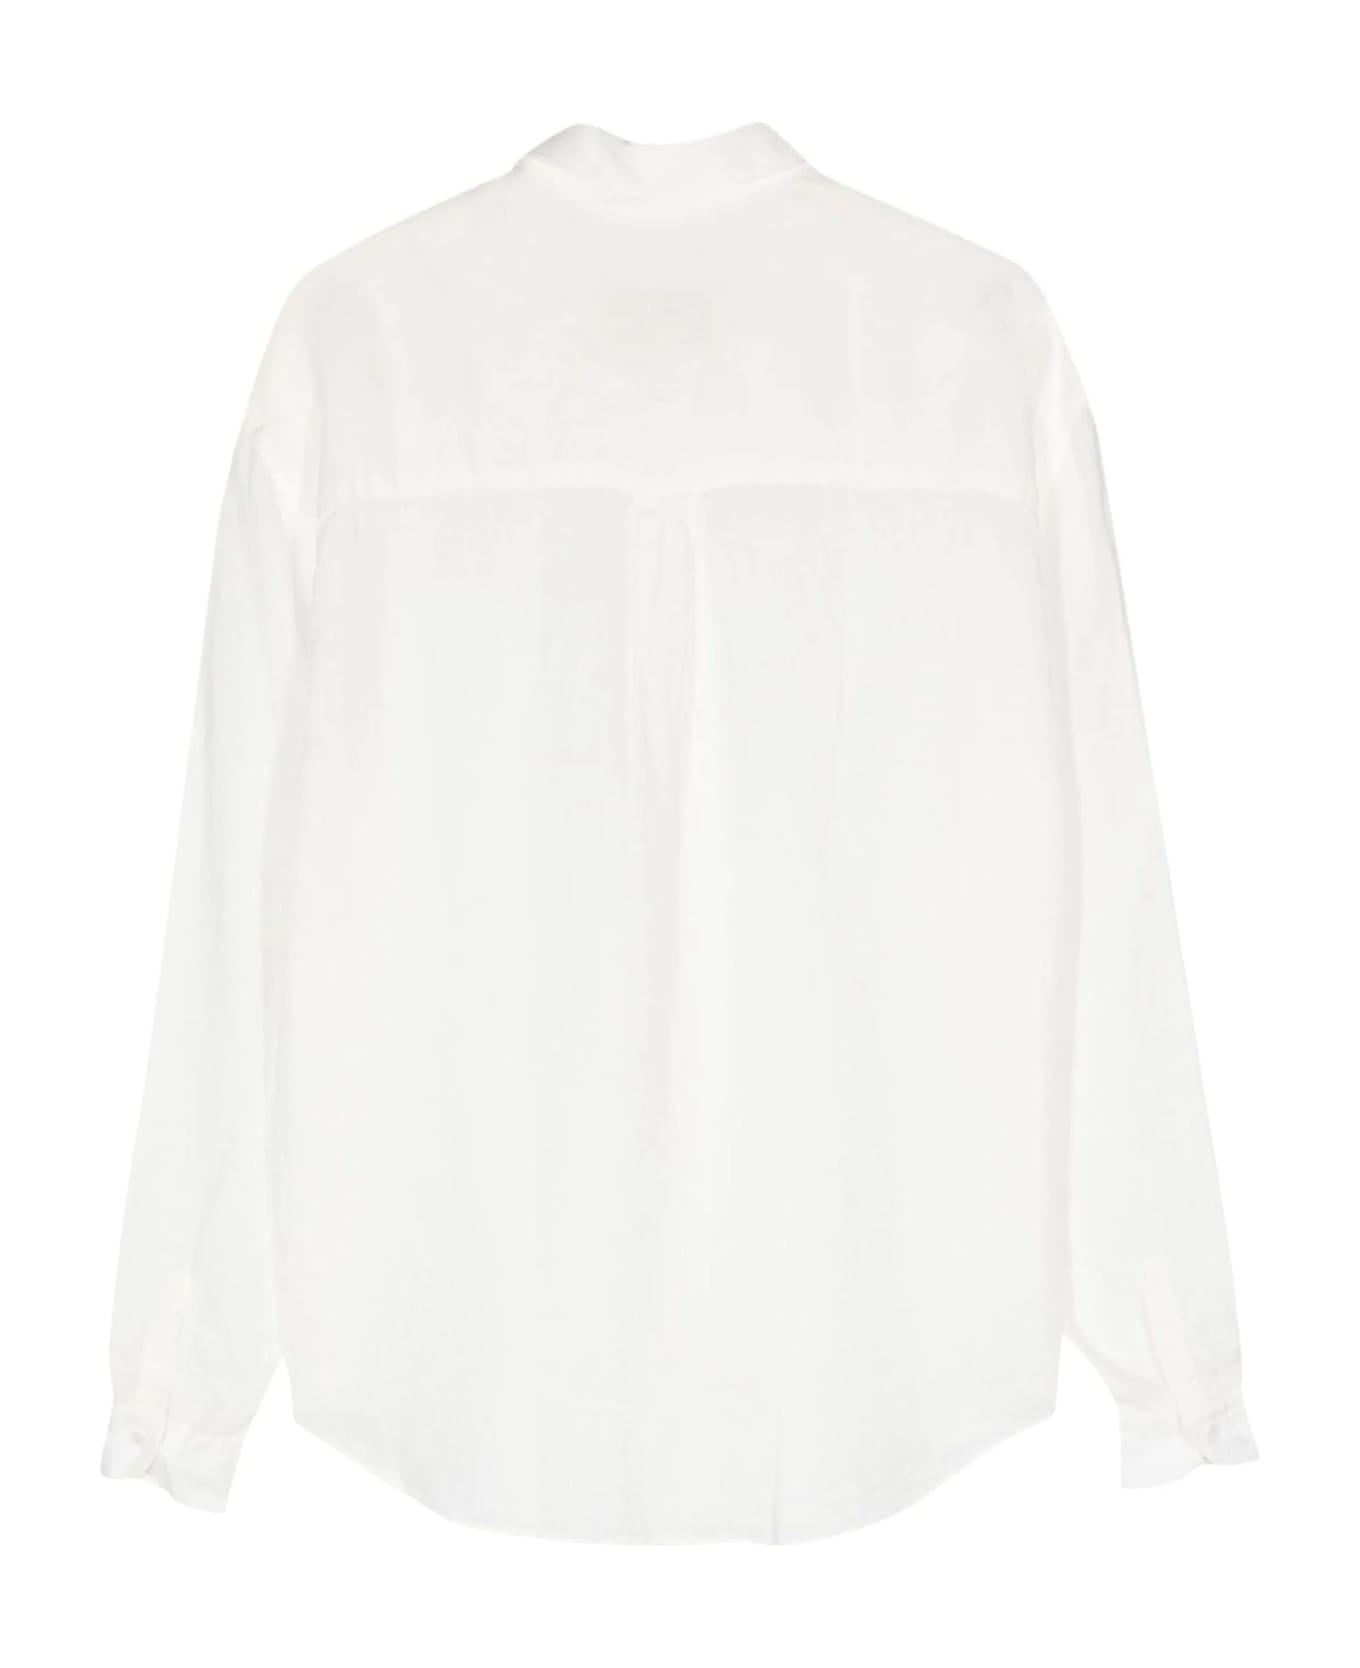 costumein Shirts White - White シャツ